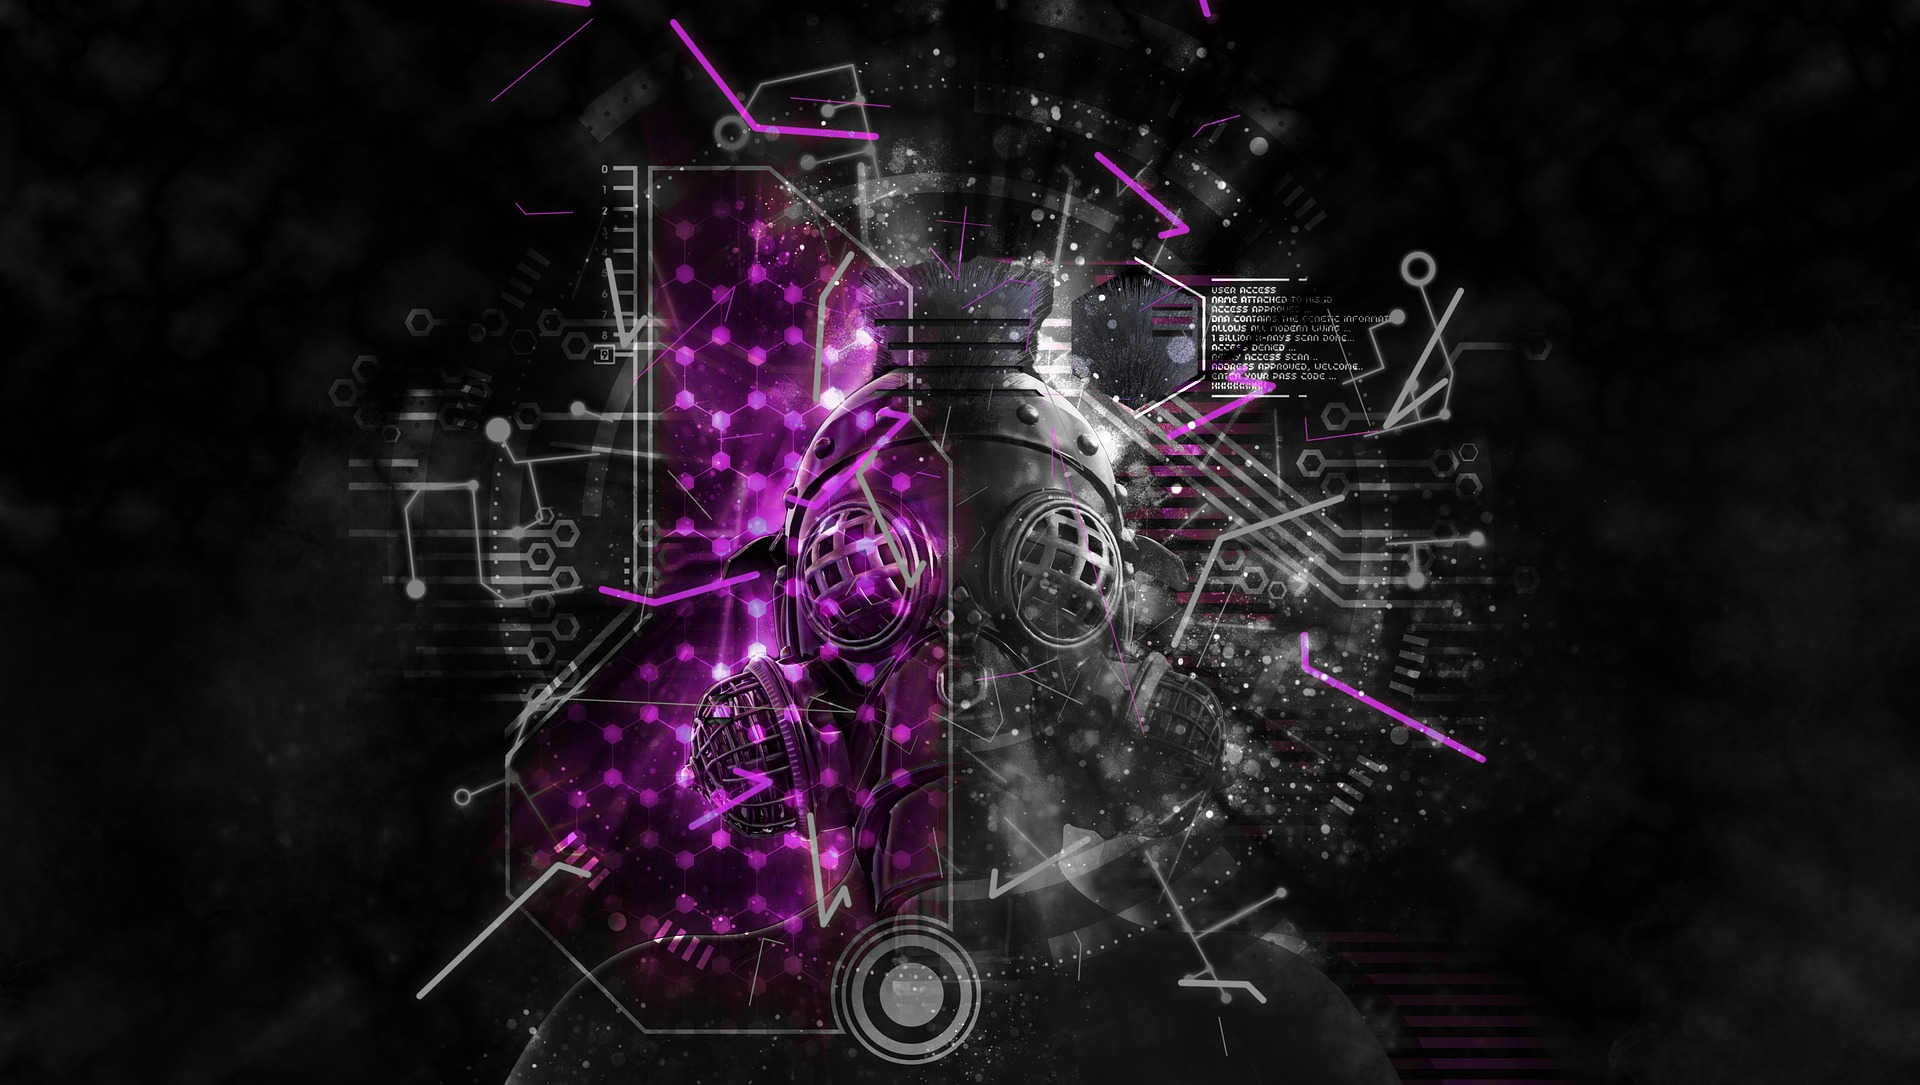 Il·lustració d'una màscara en l'entorn cibernètic en referència a la ciberseguretat. Font: Pete Linforth (Pixabay)